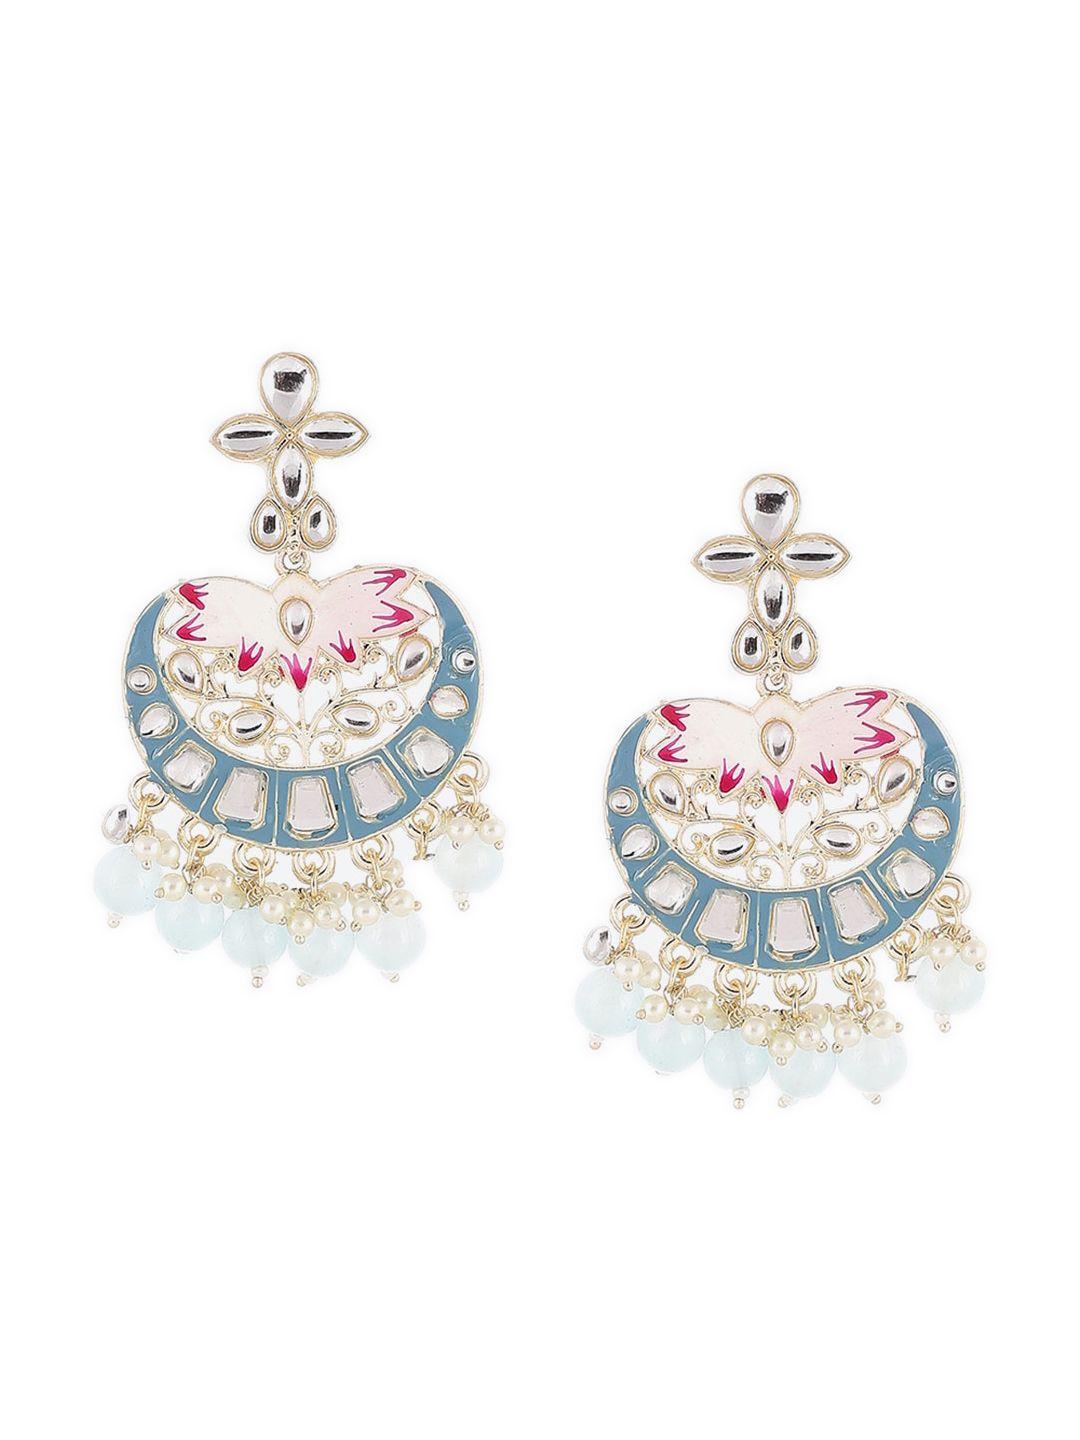 rangriti blue contemporary chandbalis earrings